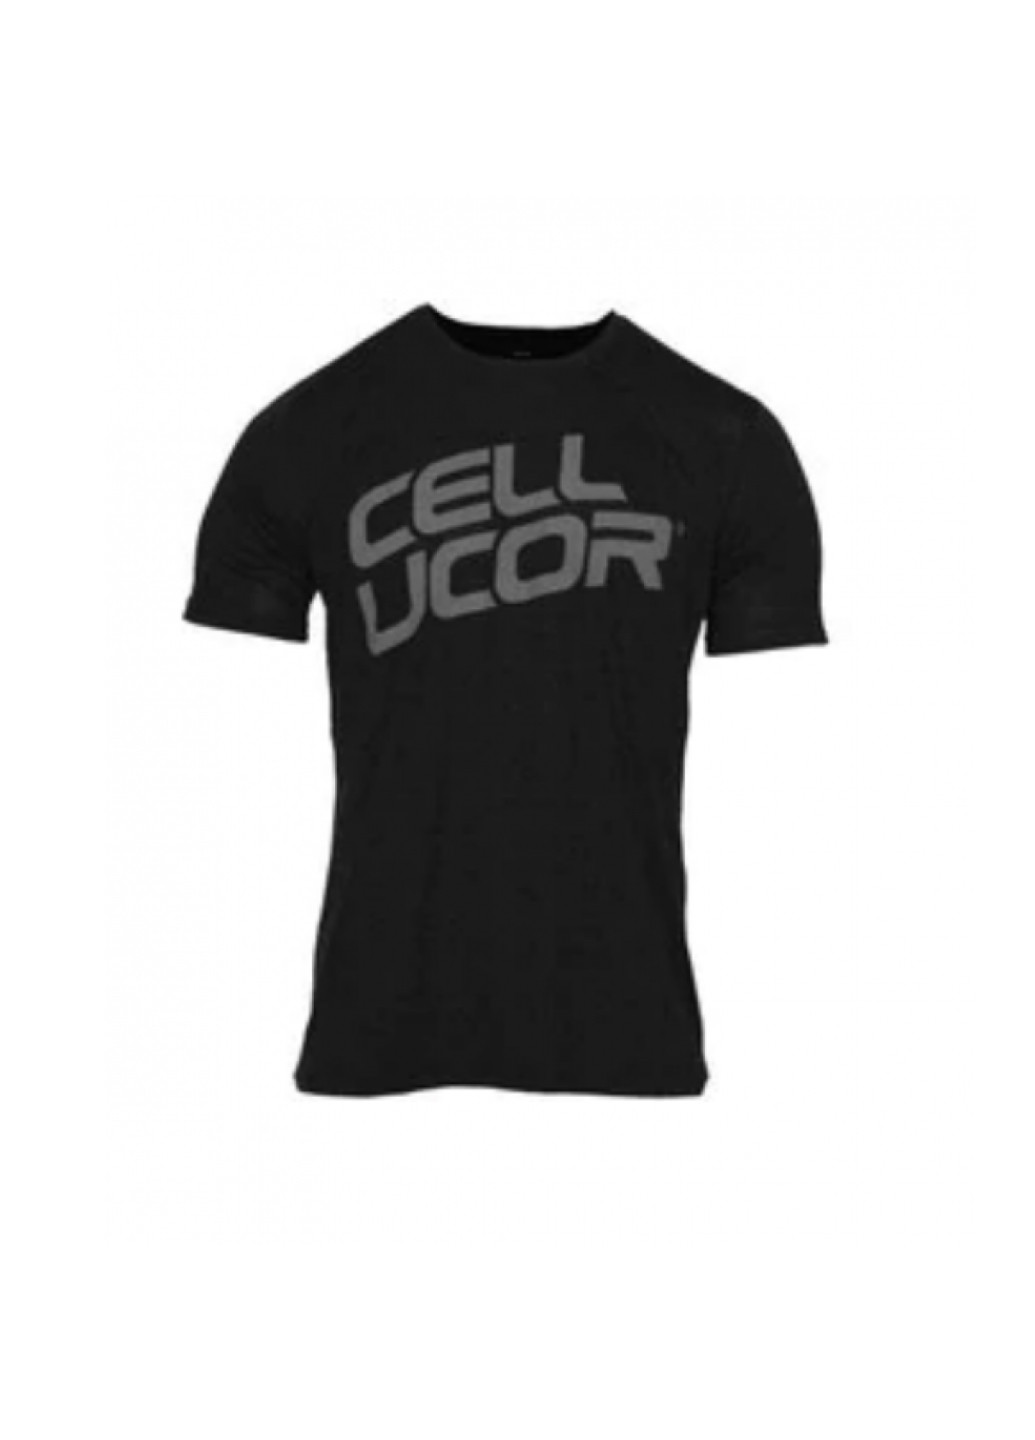 Черная футболка мужская l vintage stacked tee - large black Cellucor